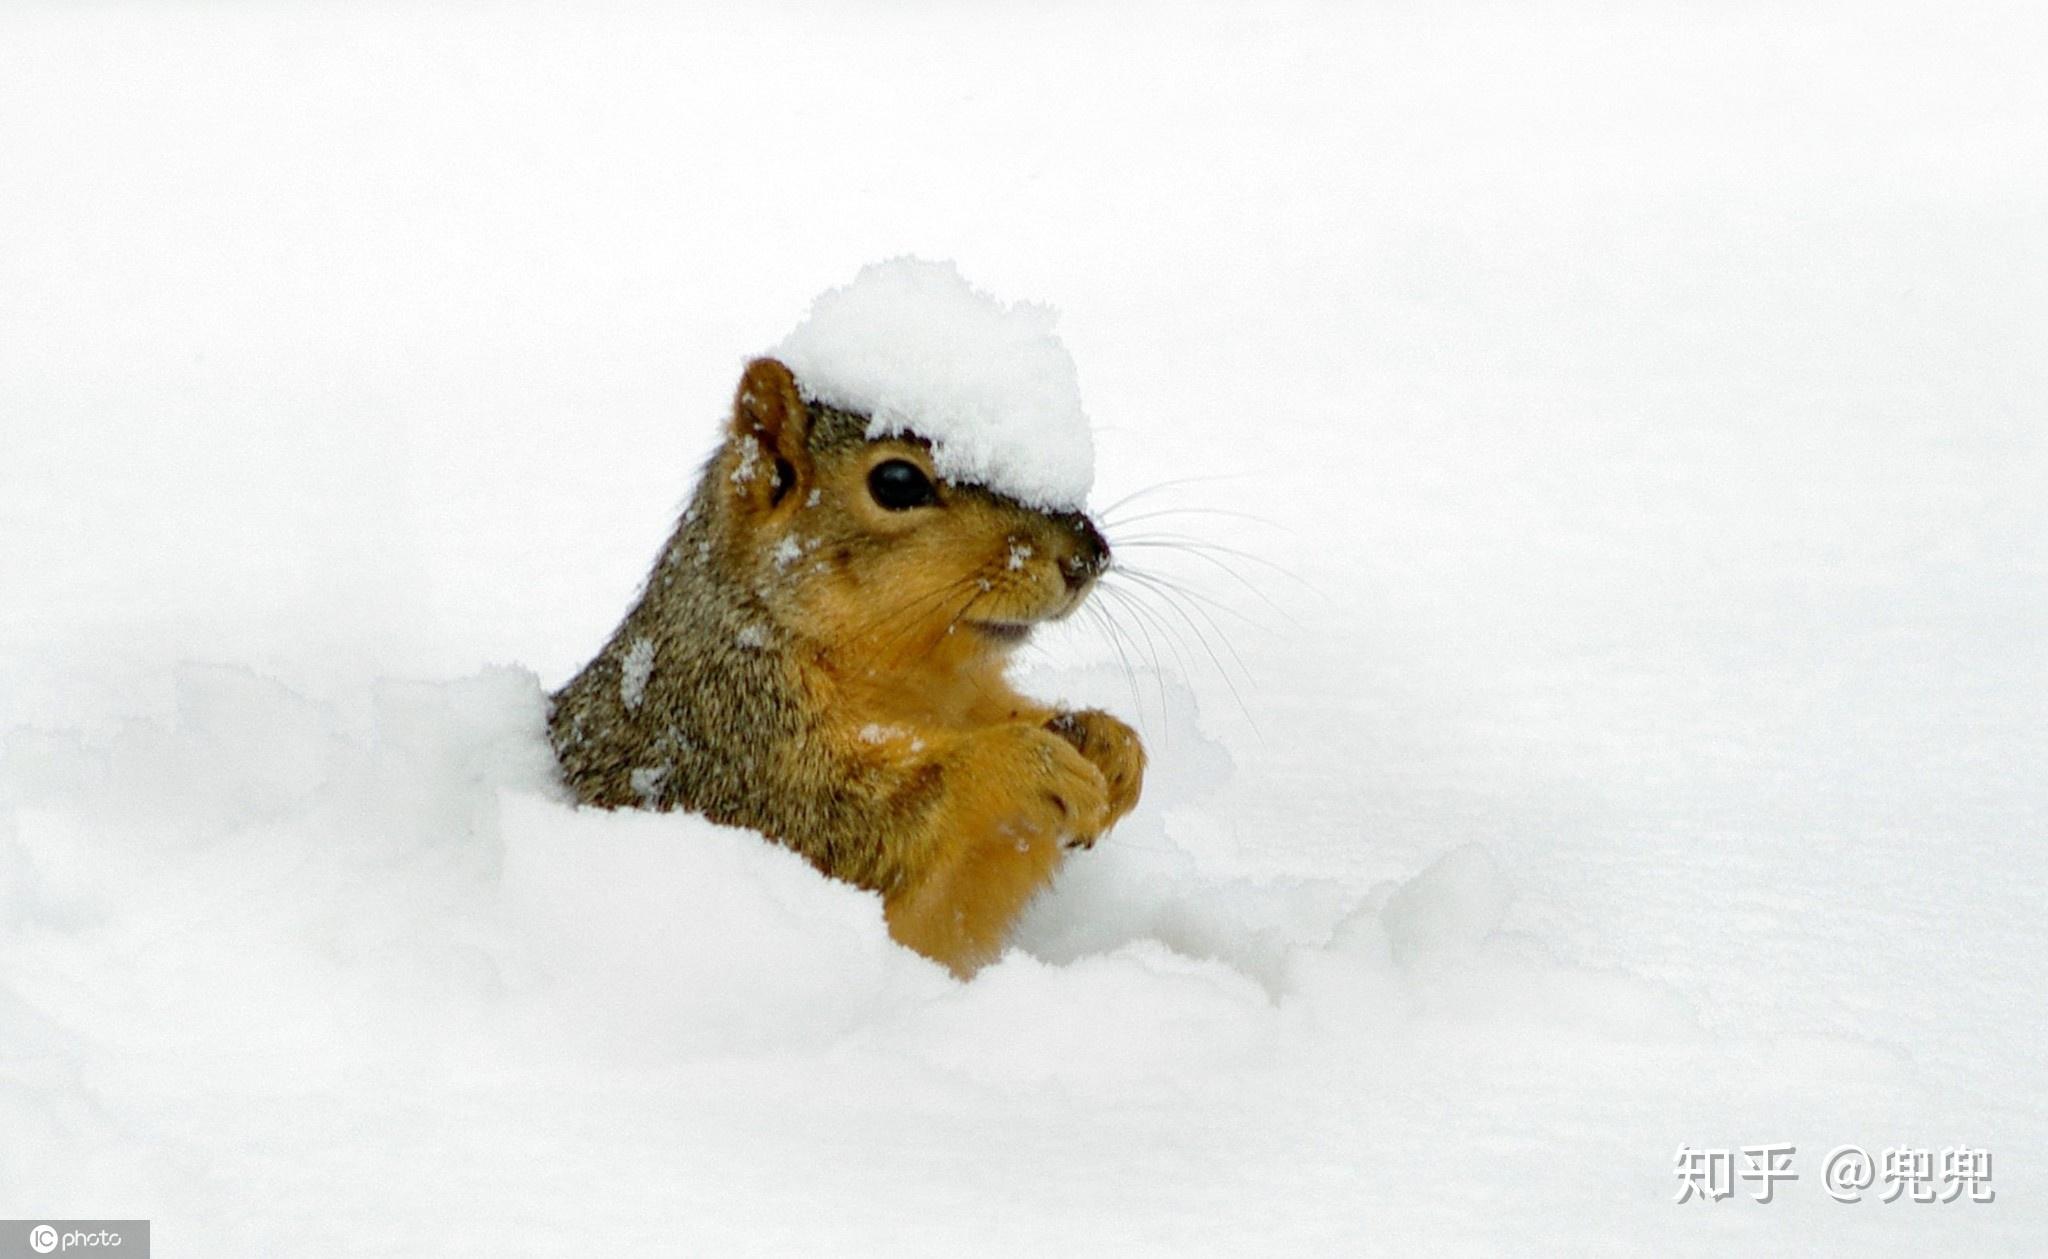 冬日已至大雪纷飞,小动物又是怎么过冬的呢?